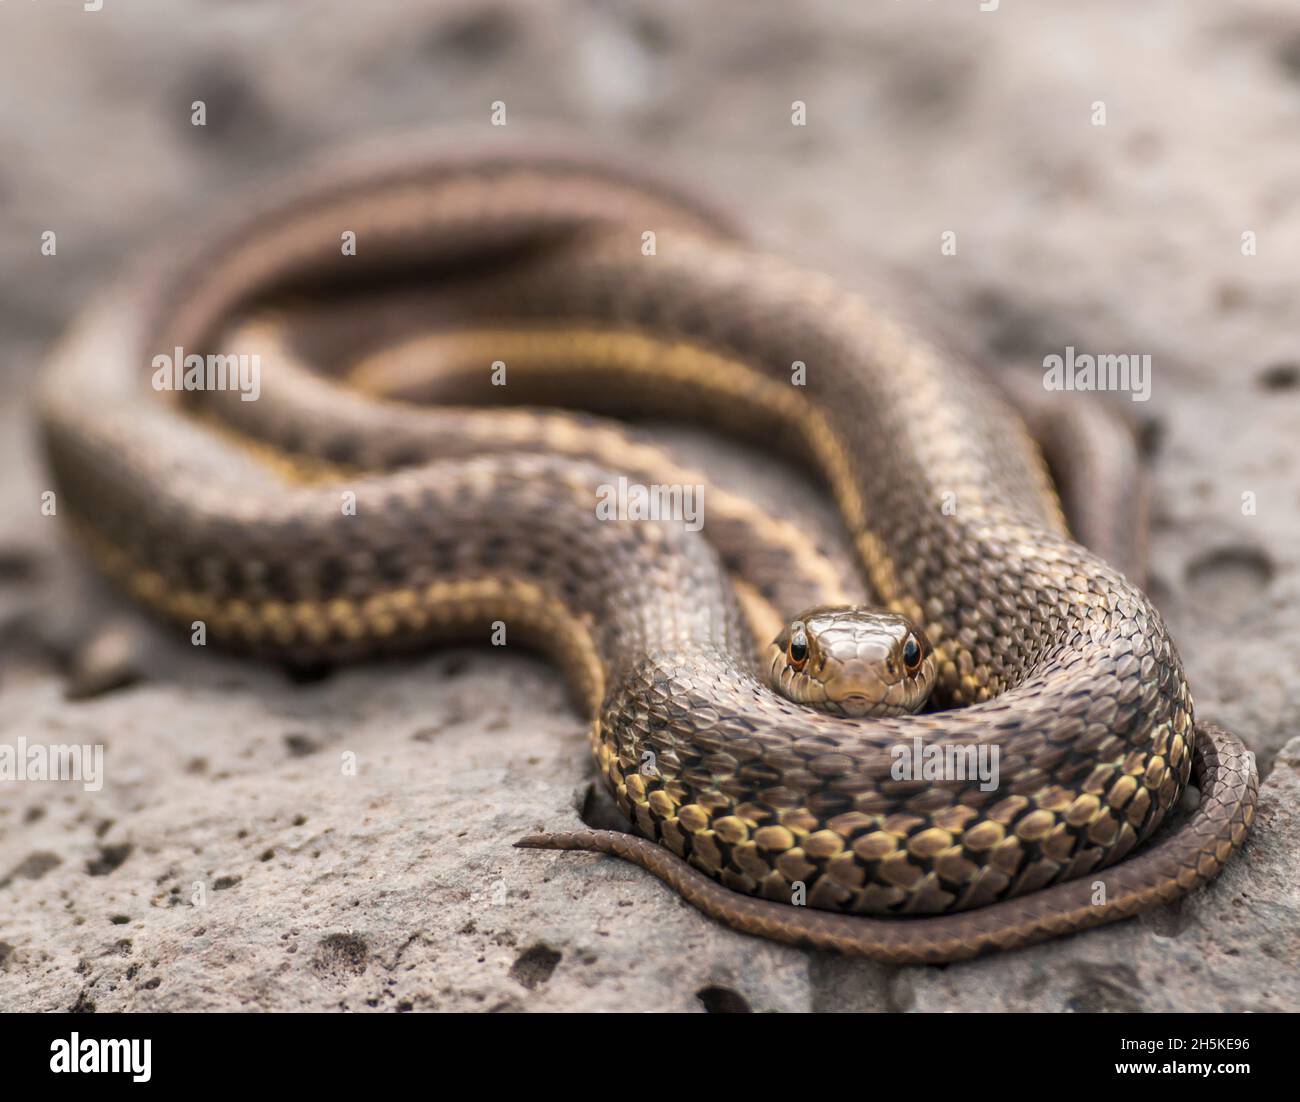 Un serpent à jarretière enroulé, Thamnophis elegans, regardant la caméra. Banque D'Images